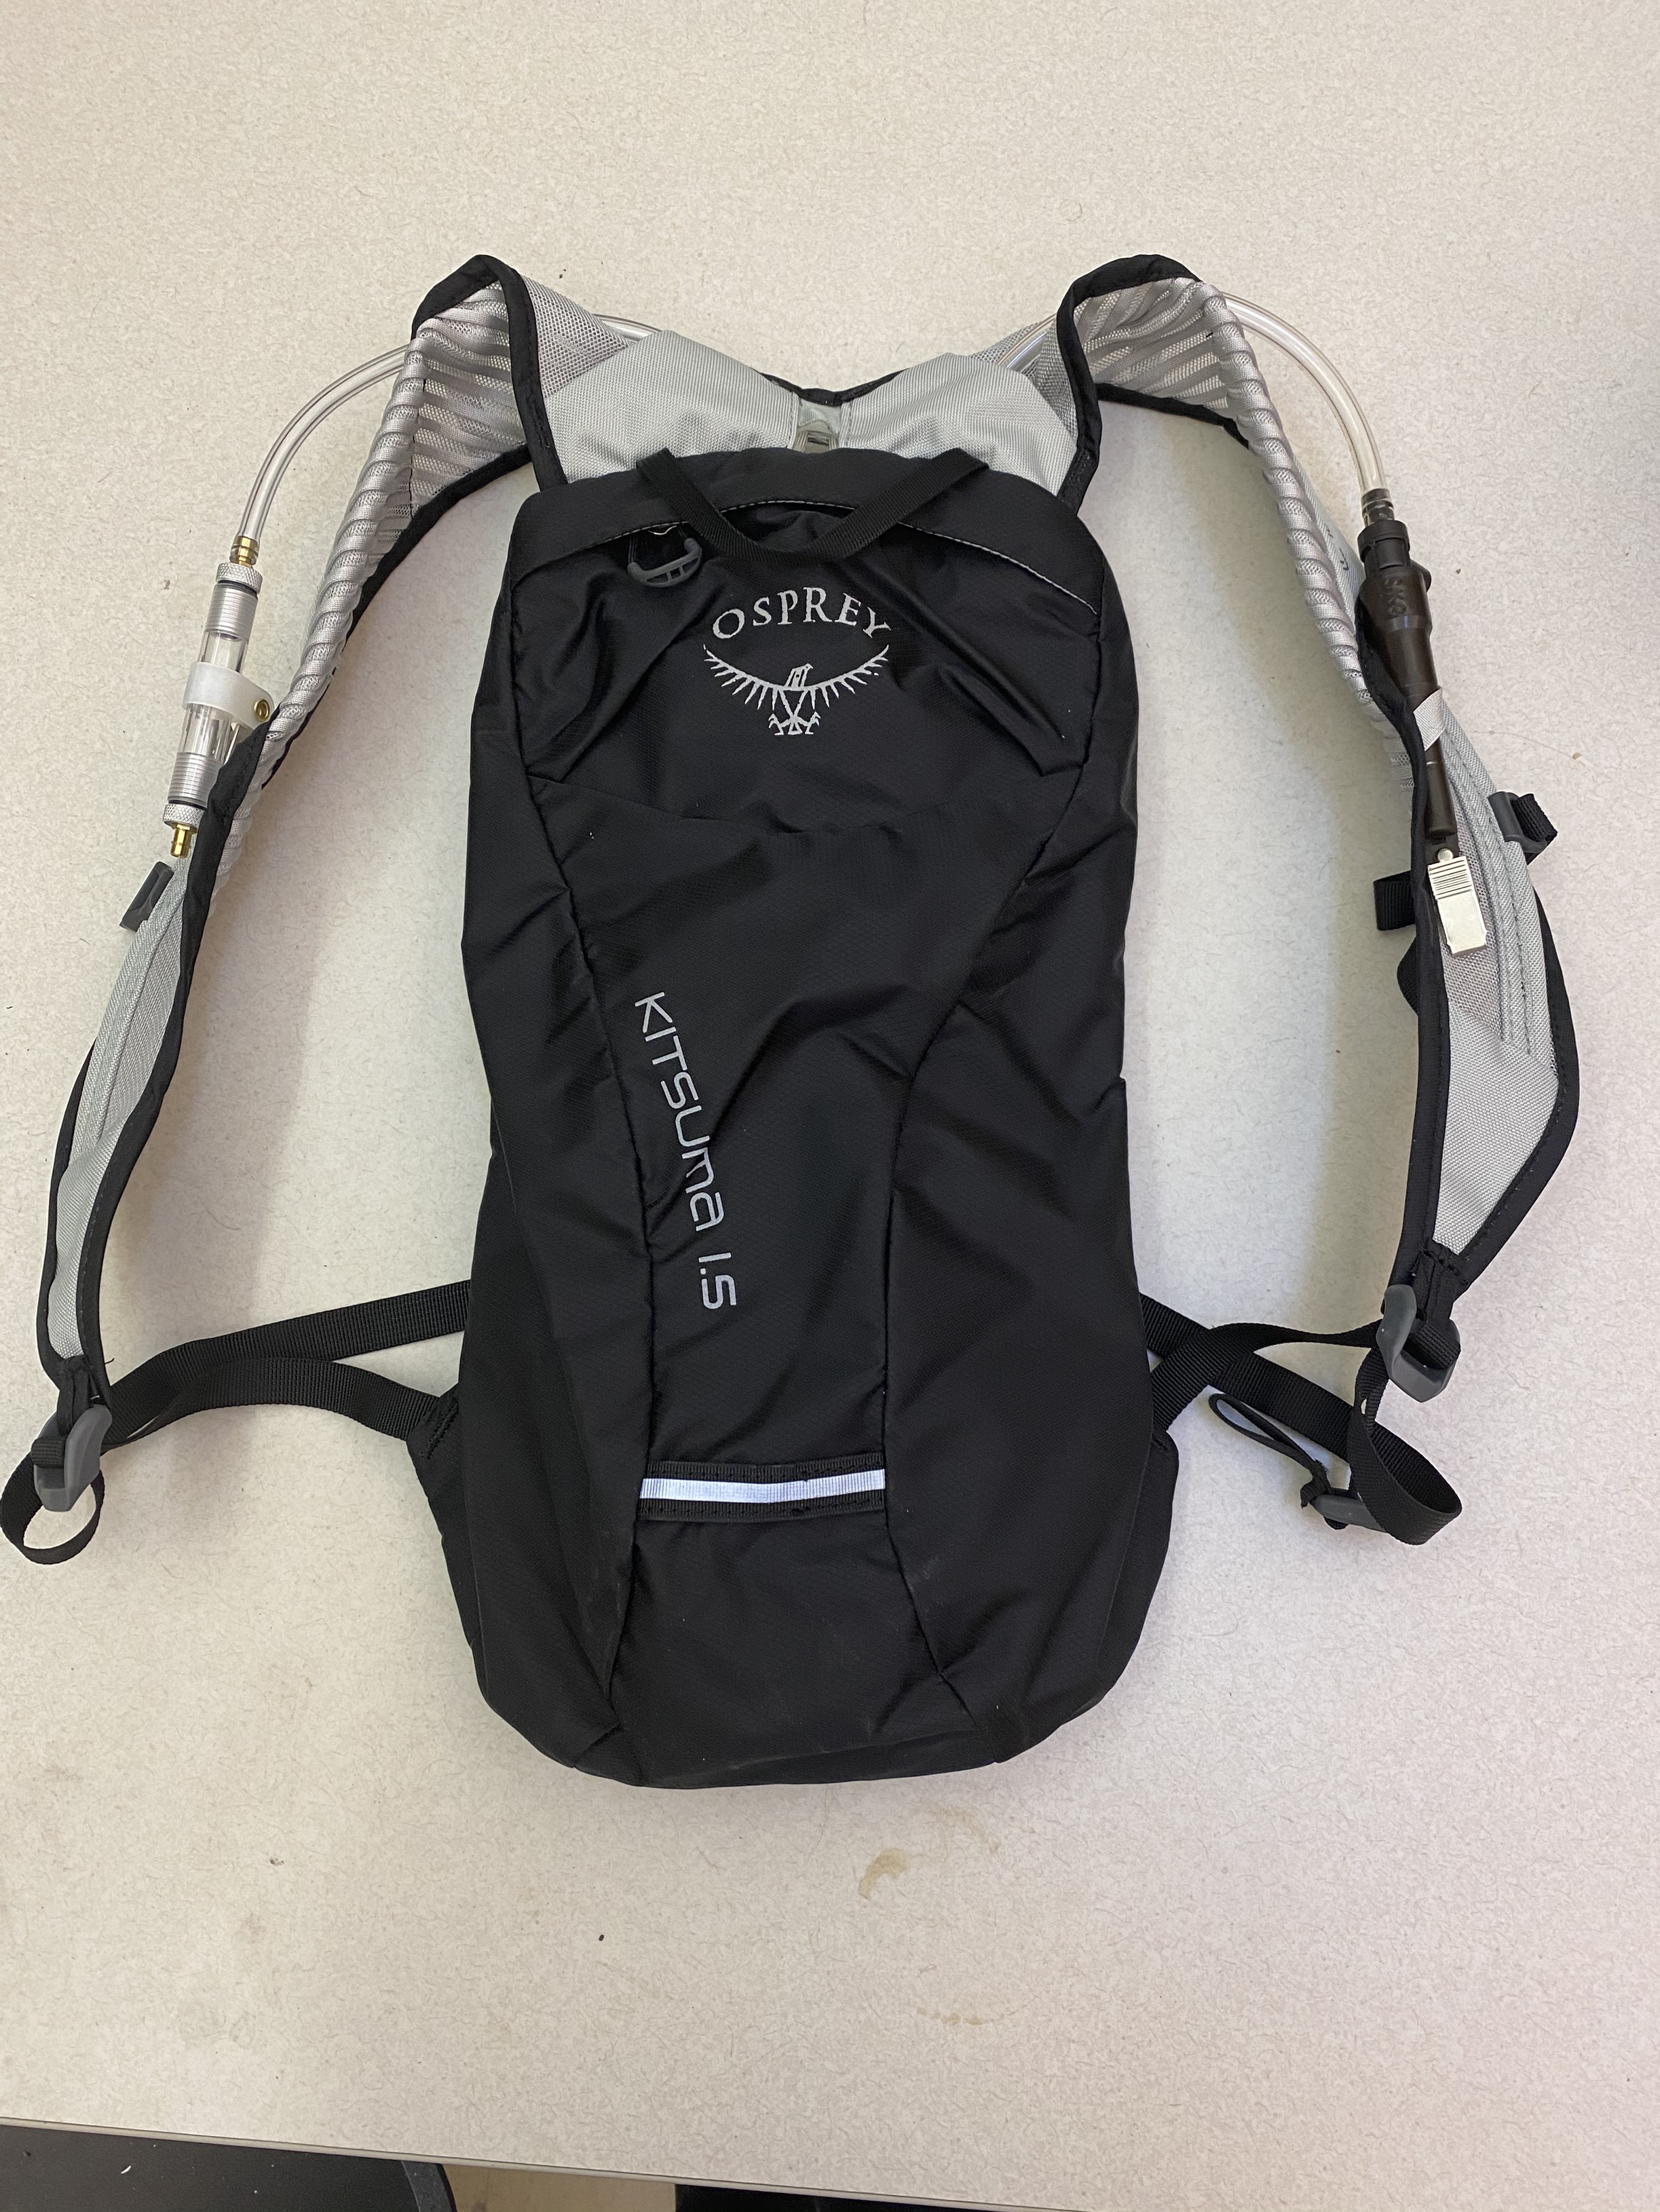 Air monitoring backpack